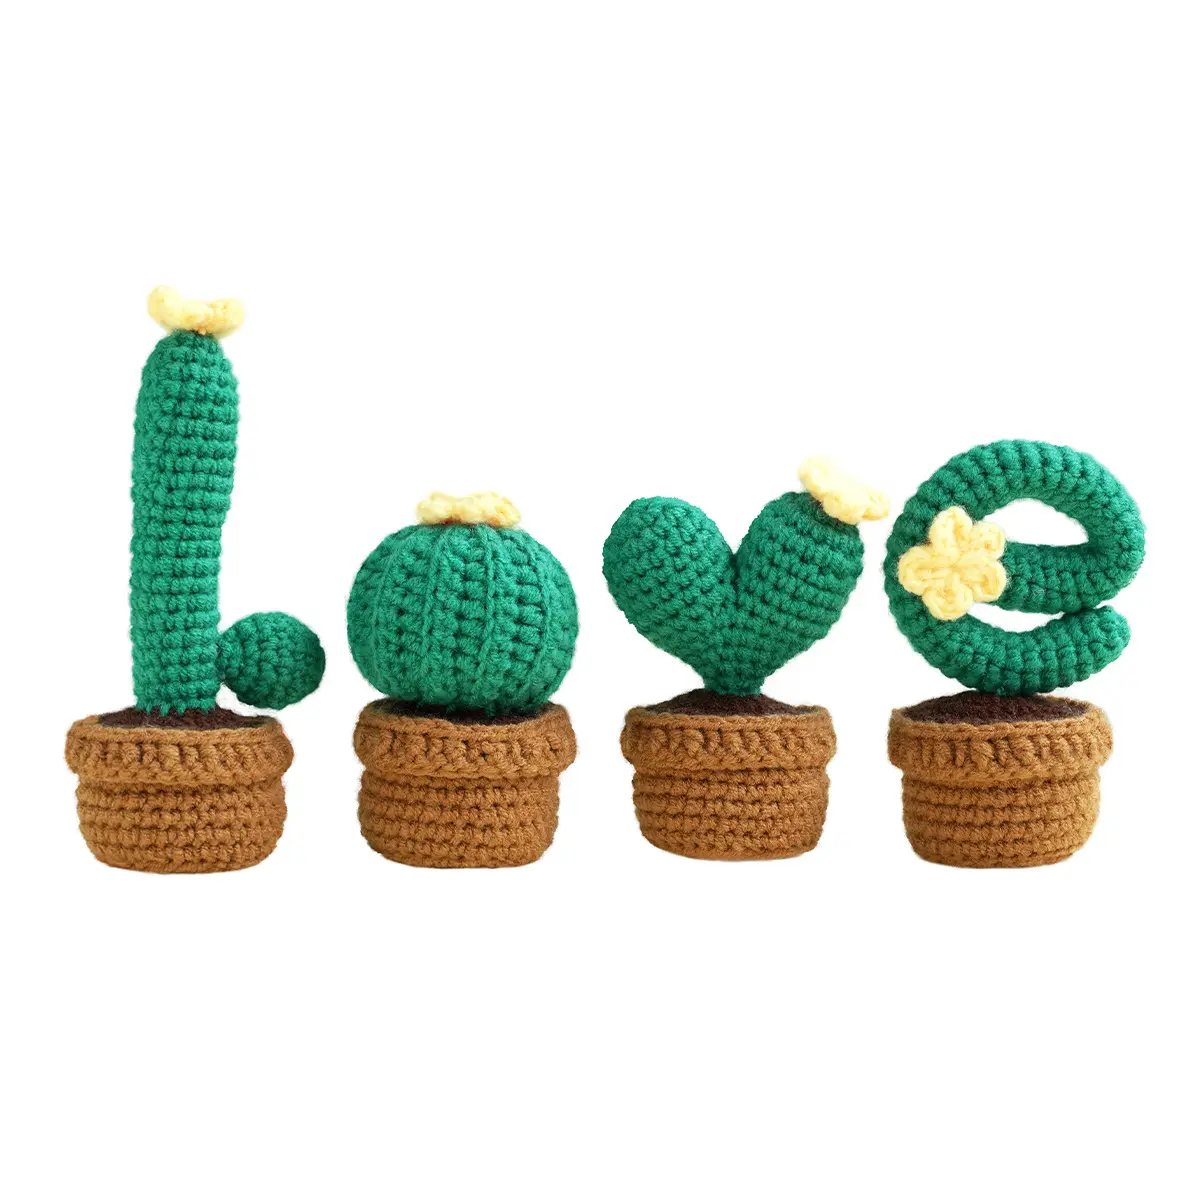 4pcs Love Potted Cactus DIY Crochet Kit com acessórios completos para fazer tricô, Crochet Kit com instruções passo-a-passo